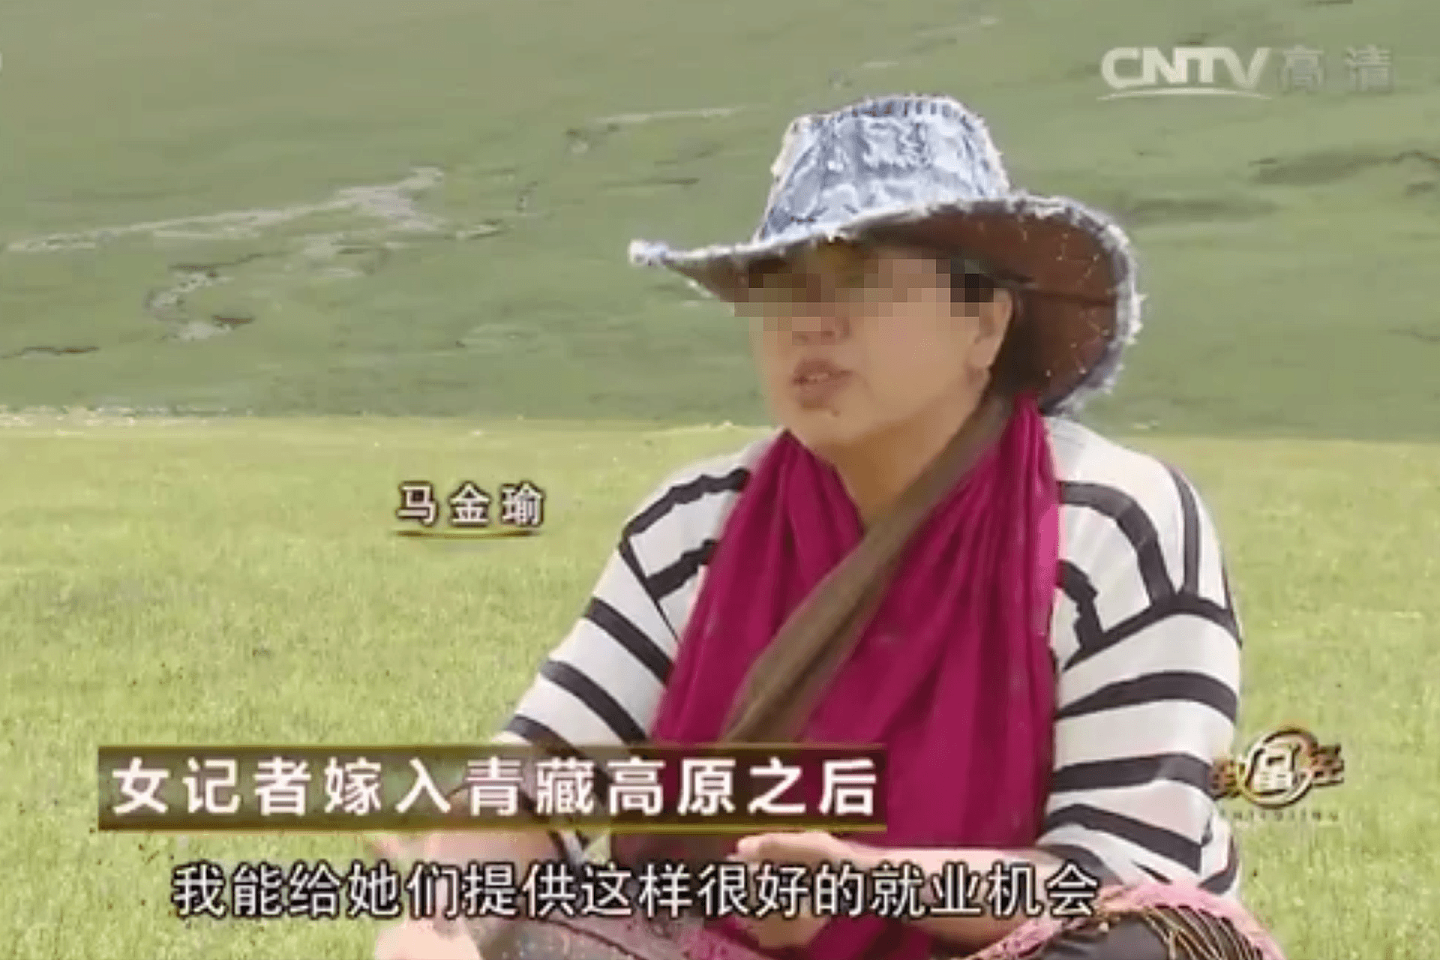 马金瑜发文自述被家暴，但在她所述遭遇家暴的时间段内，中国官方媒体有关她的报道，全部集中在“浪漫爱情”、“神仙眷侣”、“献身西部”的论调上。（中国央视截图）